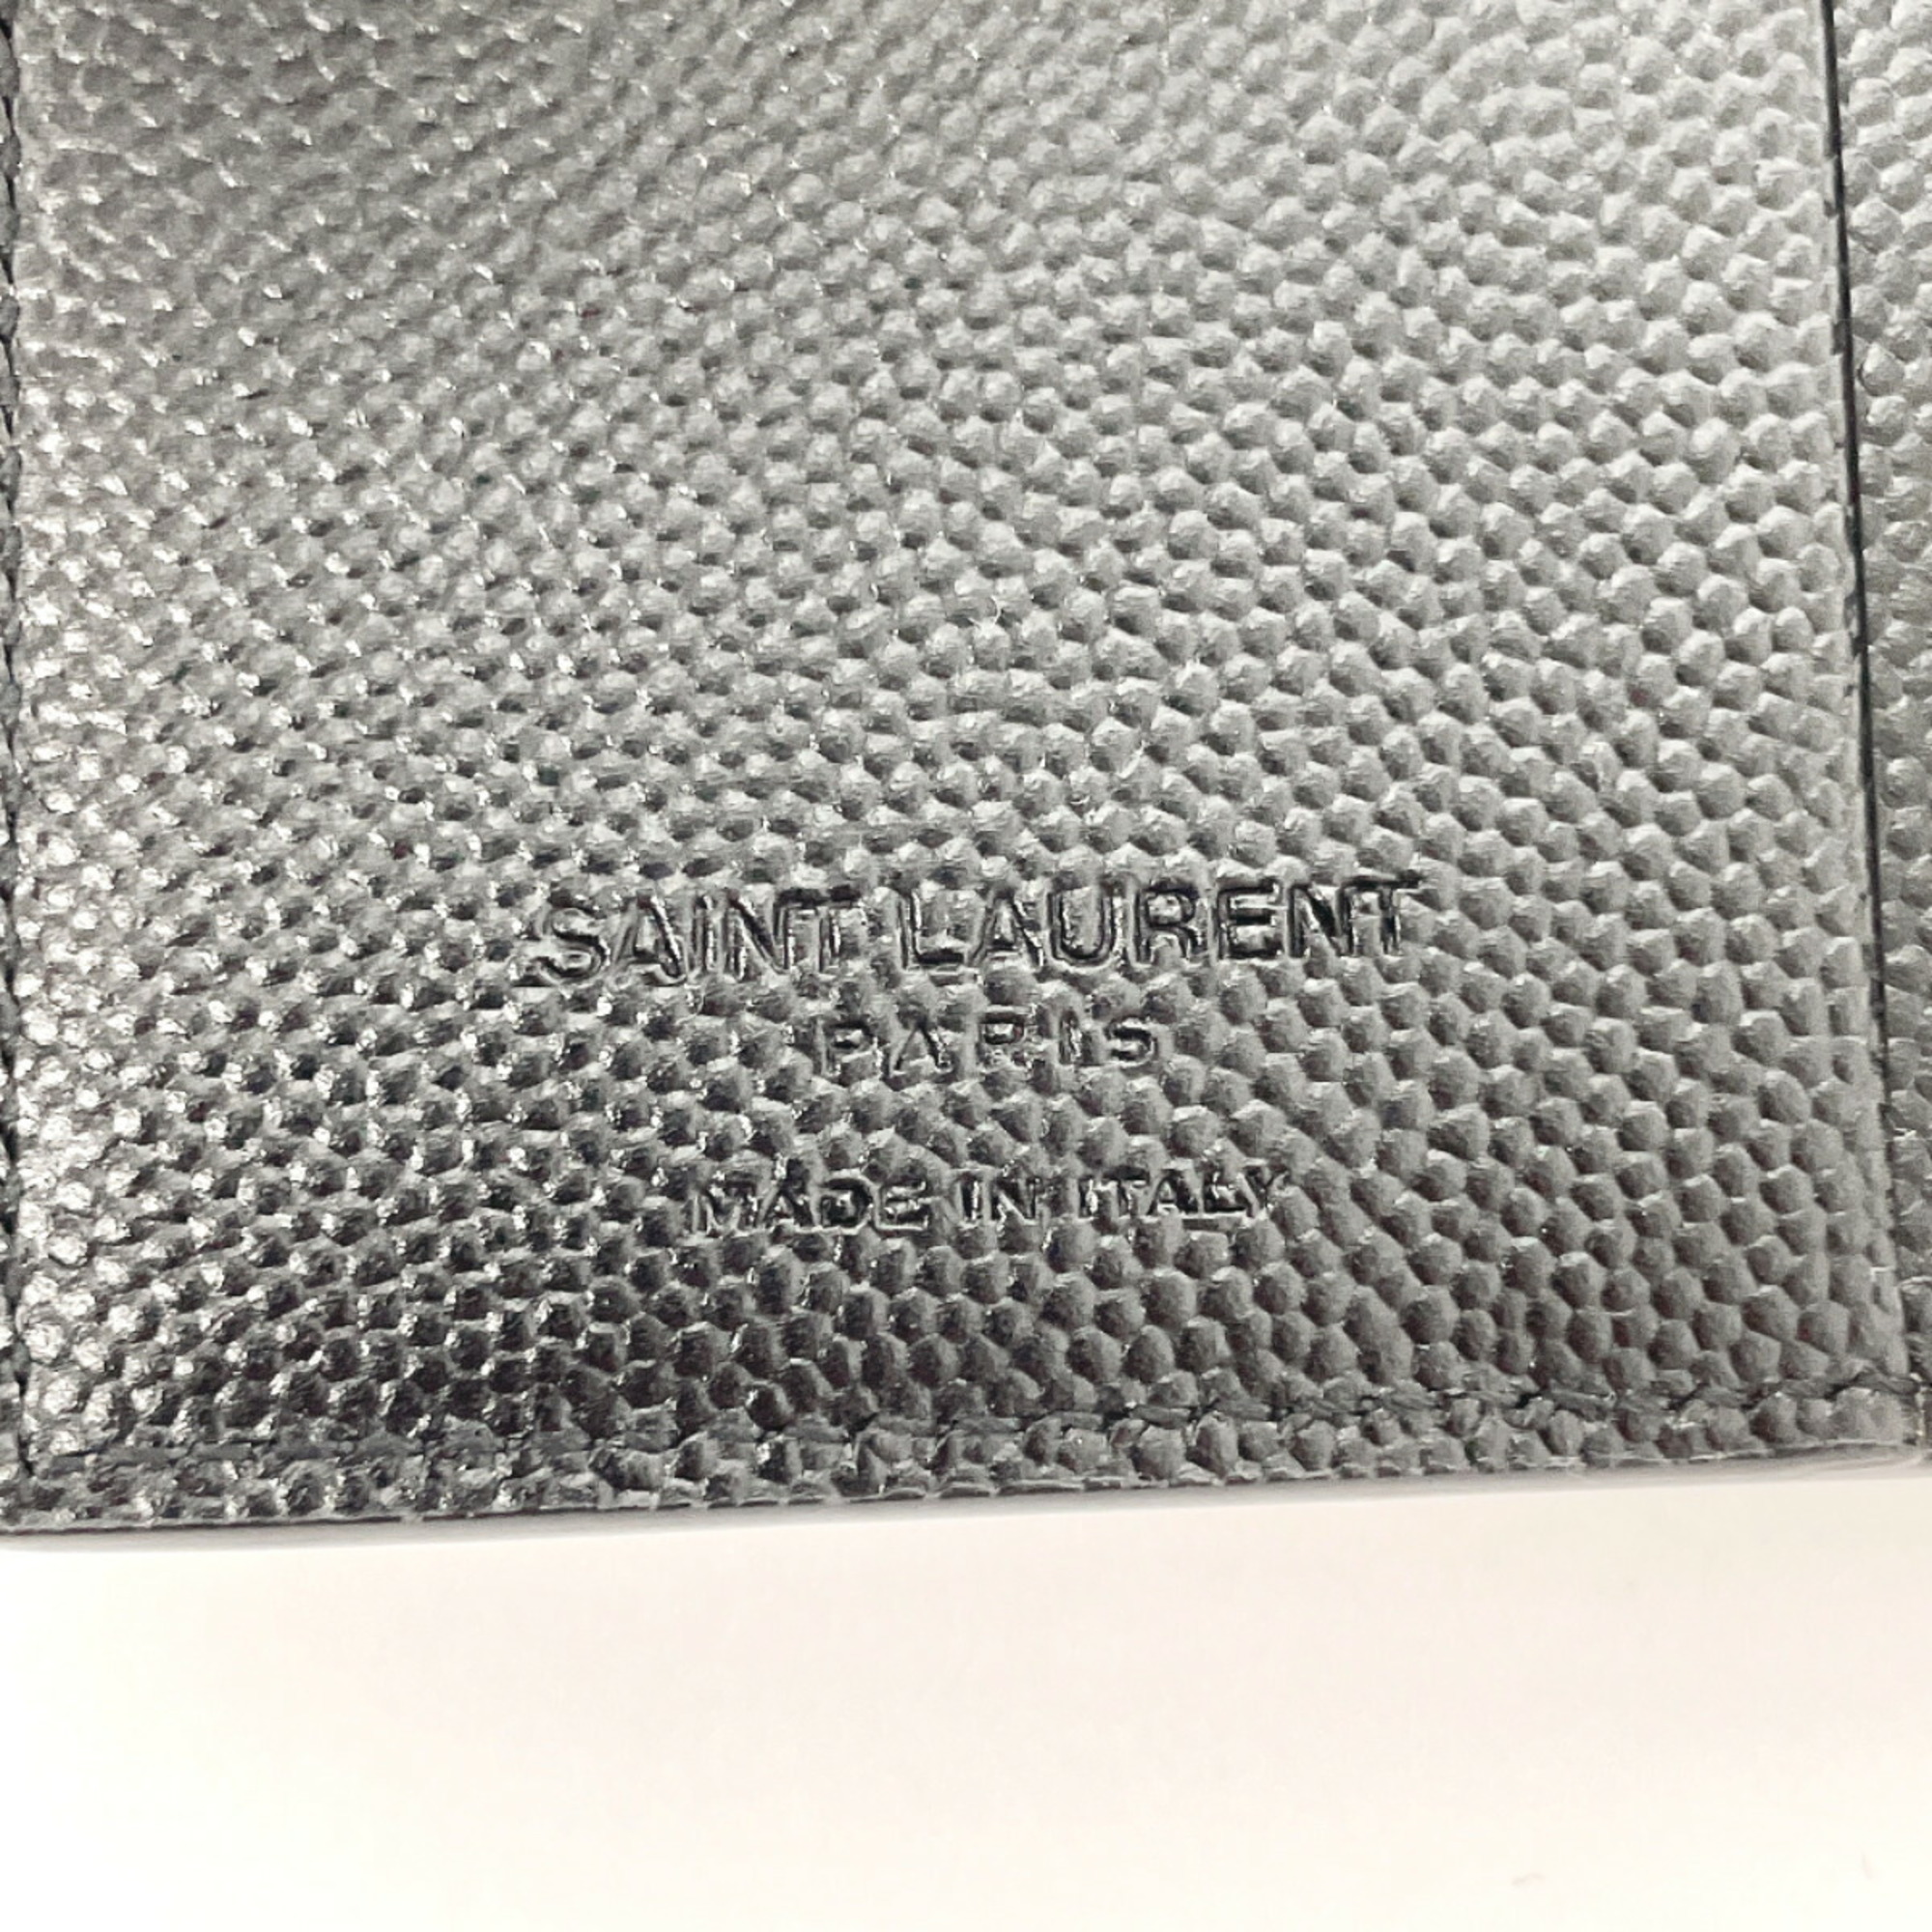 Yves Saint Laurent SAINT LAURENT PARIS Saint Laurent Paris Compact Wallet YBL575789 Bi-fold wallet Leather Black Men's